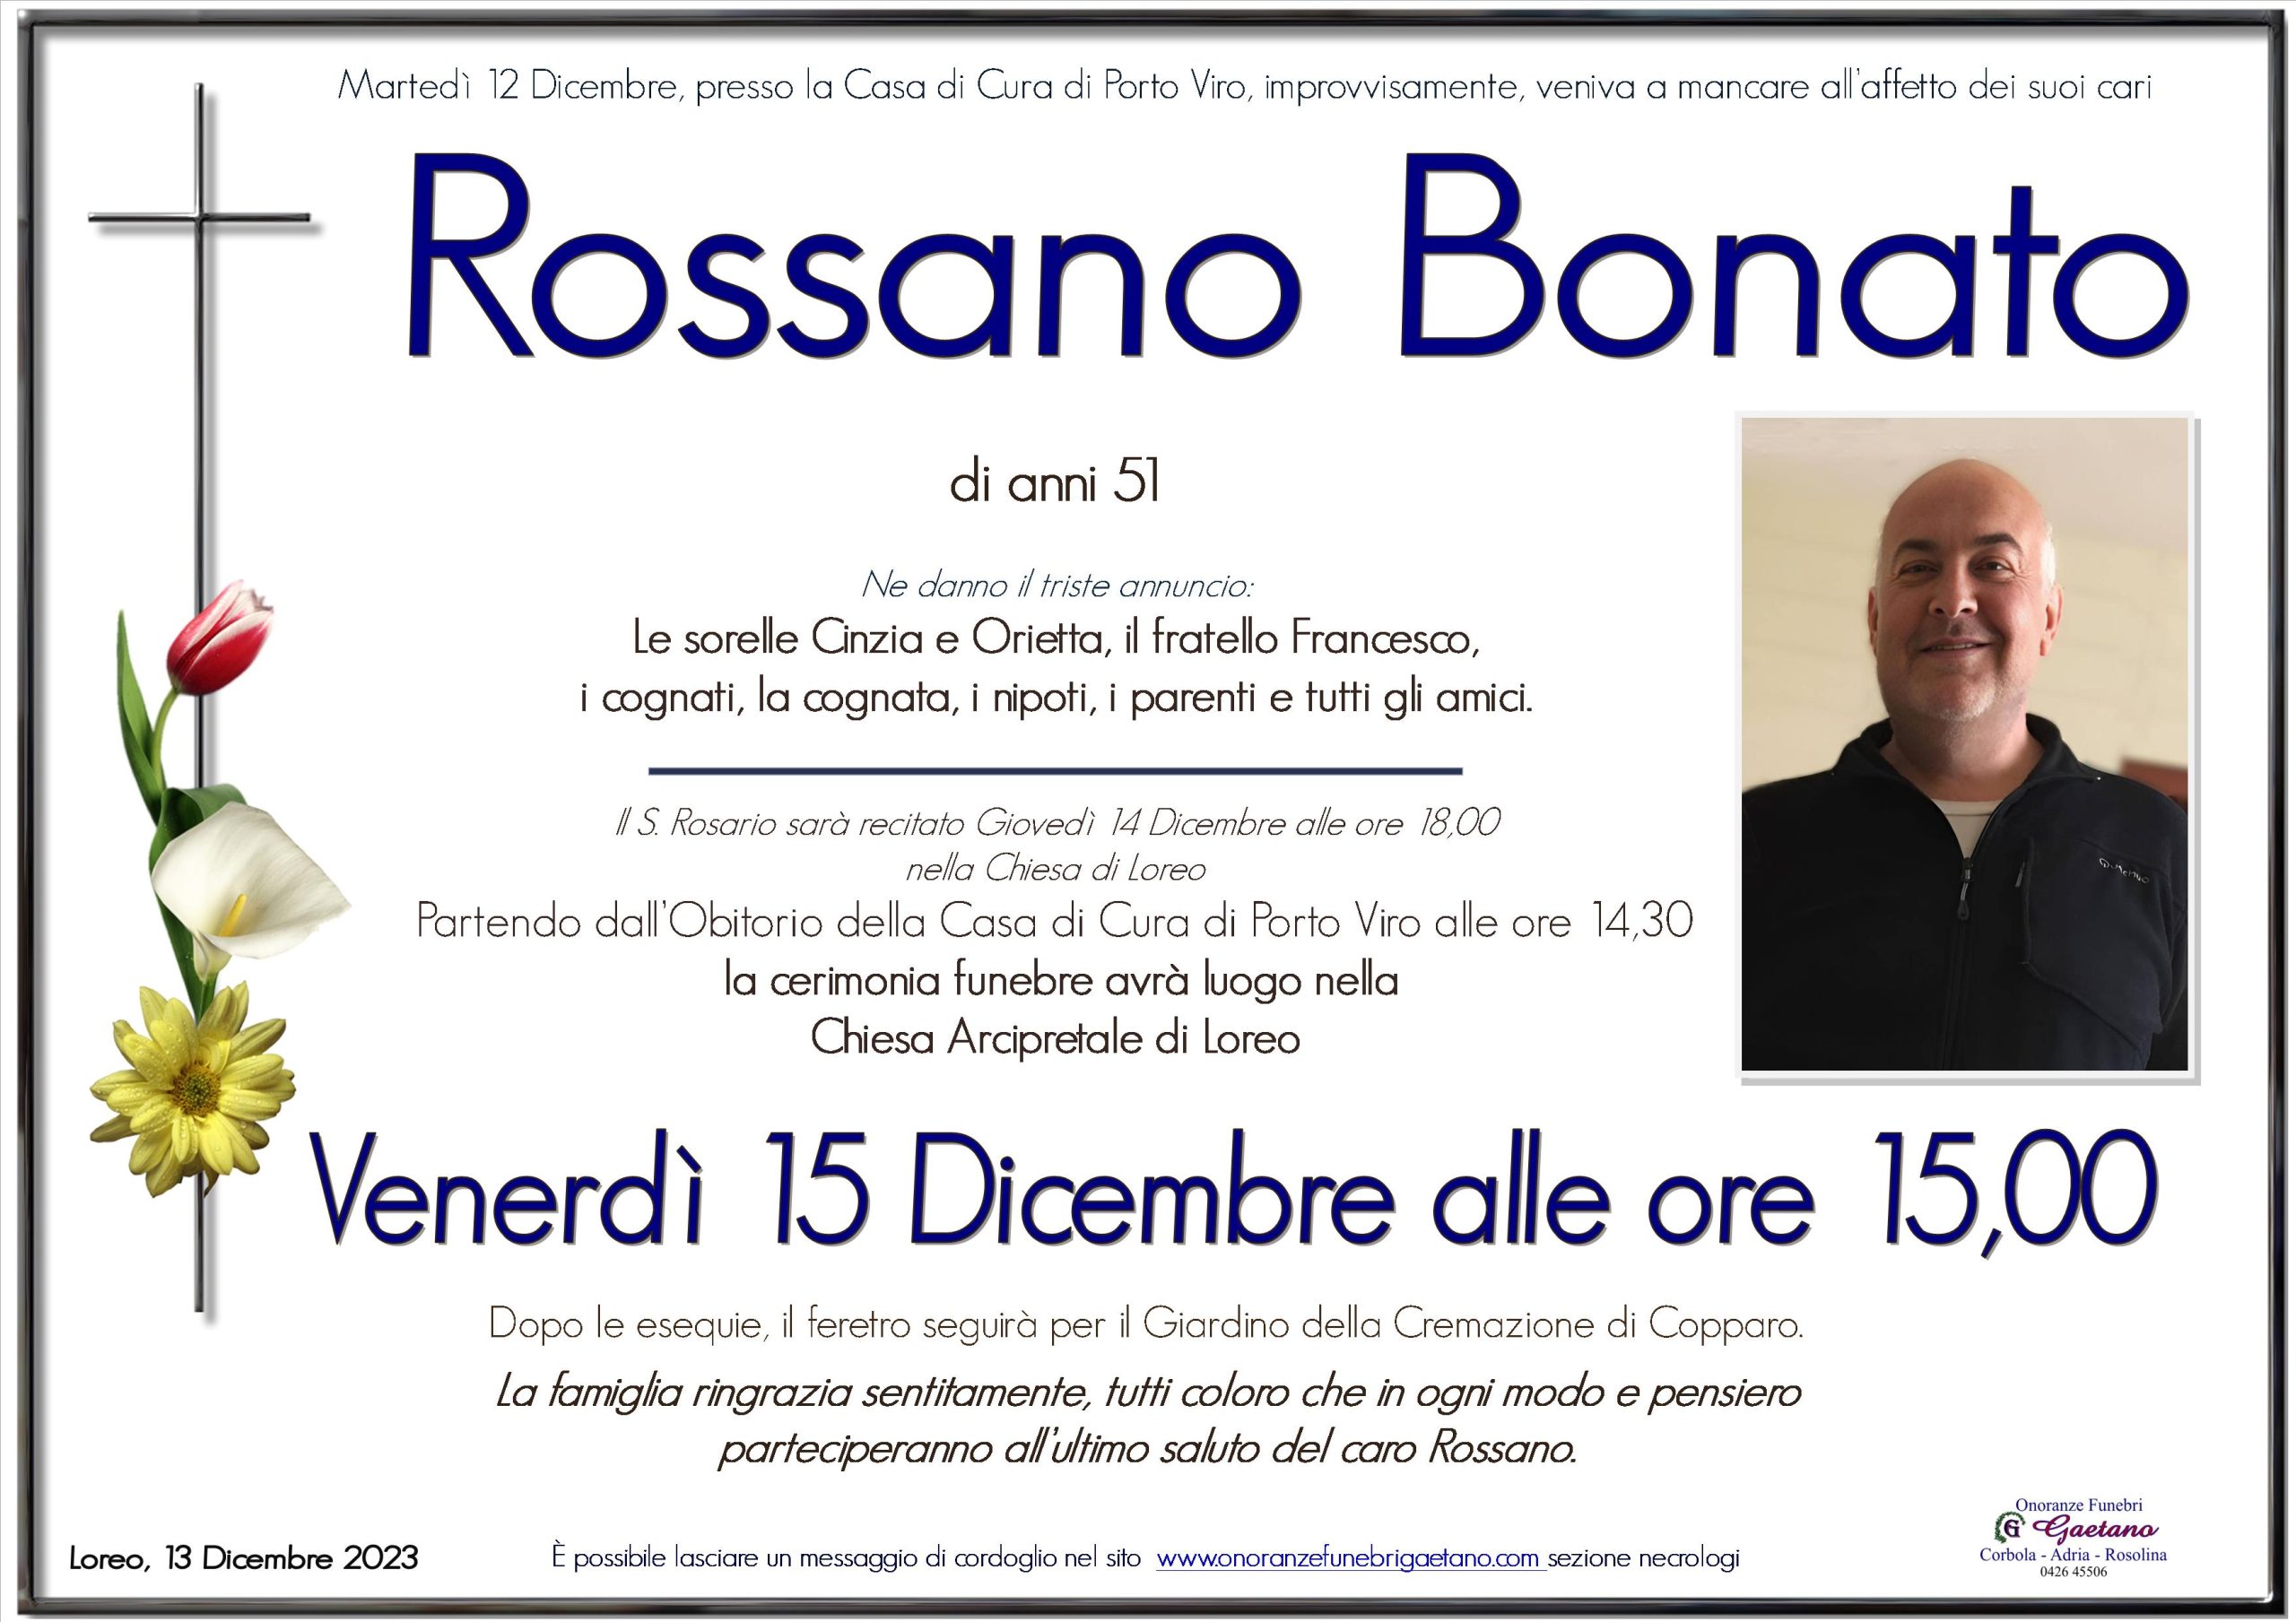 Rossano Bonato